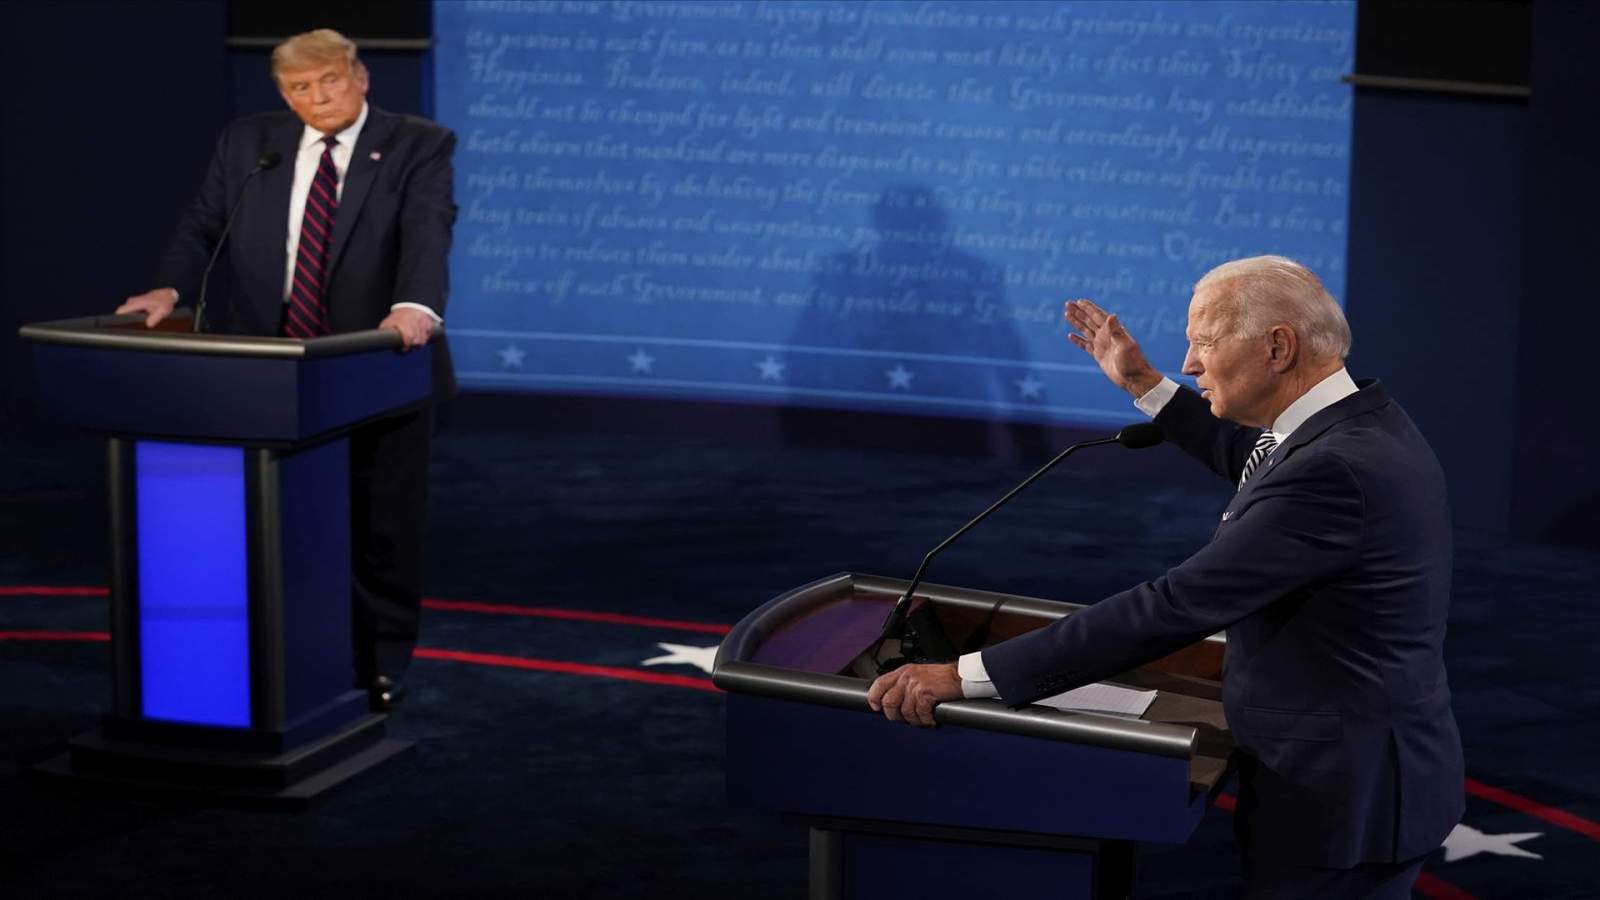 Trump, Biden lash, interrupt each other during first presidential debate